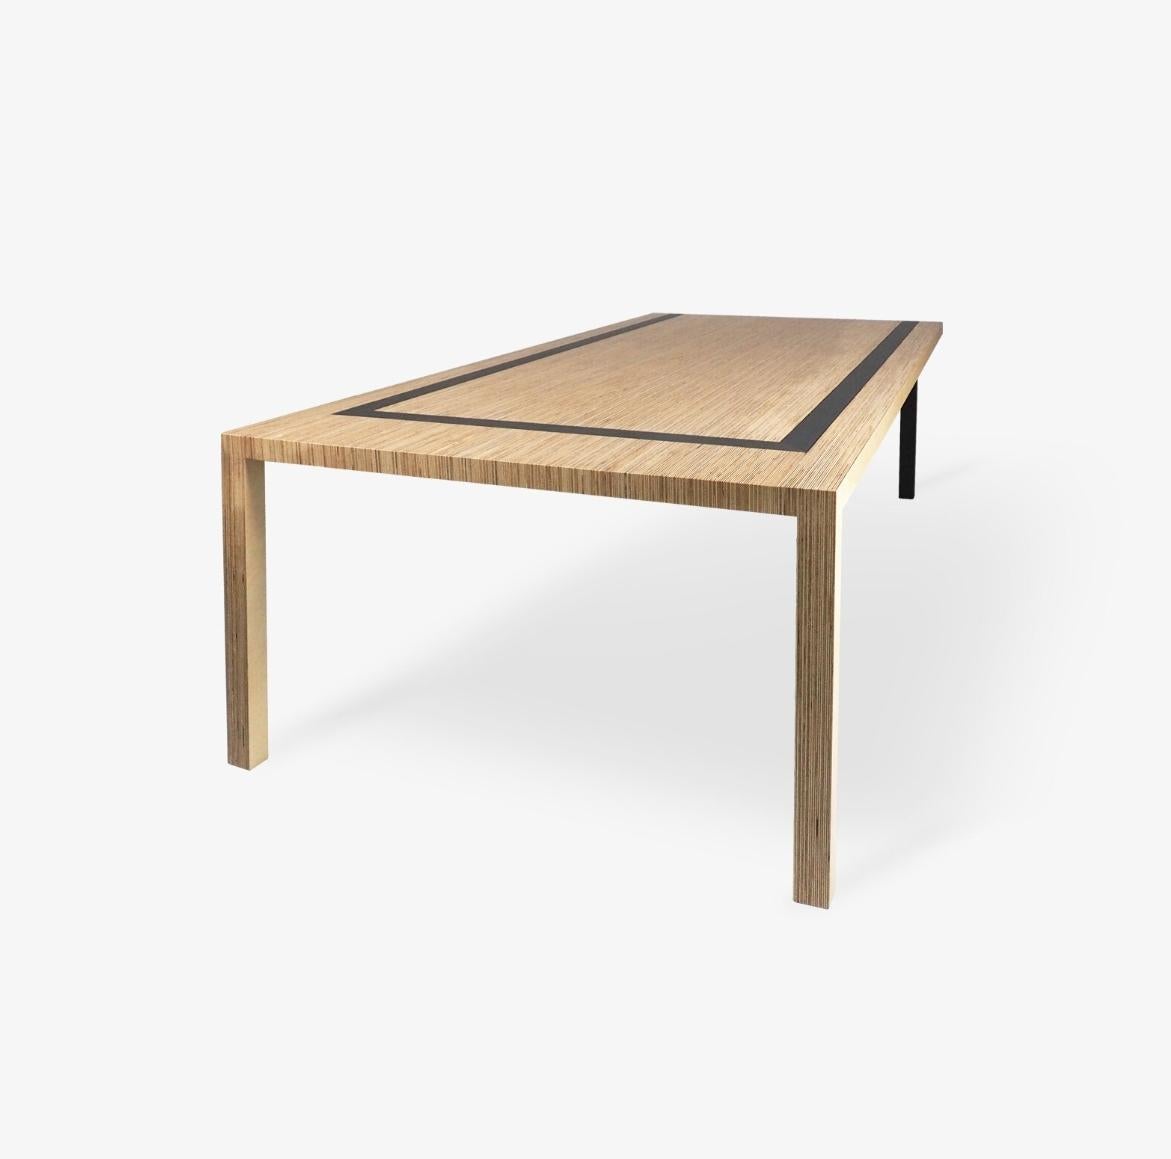 Eine U-Form hält diesen Tisch zusammen und bildet ein dynamisches und asymmetrisches Stück. Jedes Beinpaar ist anders und verleiht dem Tisch auf jeder Seite ein anderes Aussehen.

Seine minimalistische Eleganz kontrastiert mit Stärke.
Hinter dieser